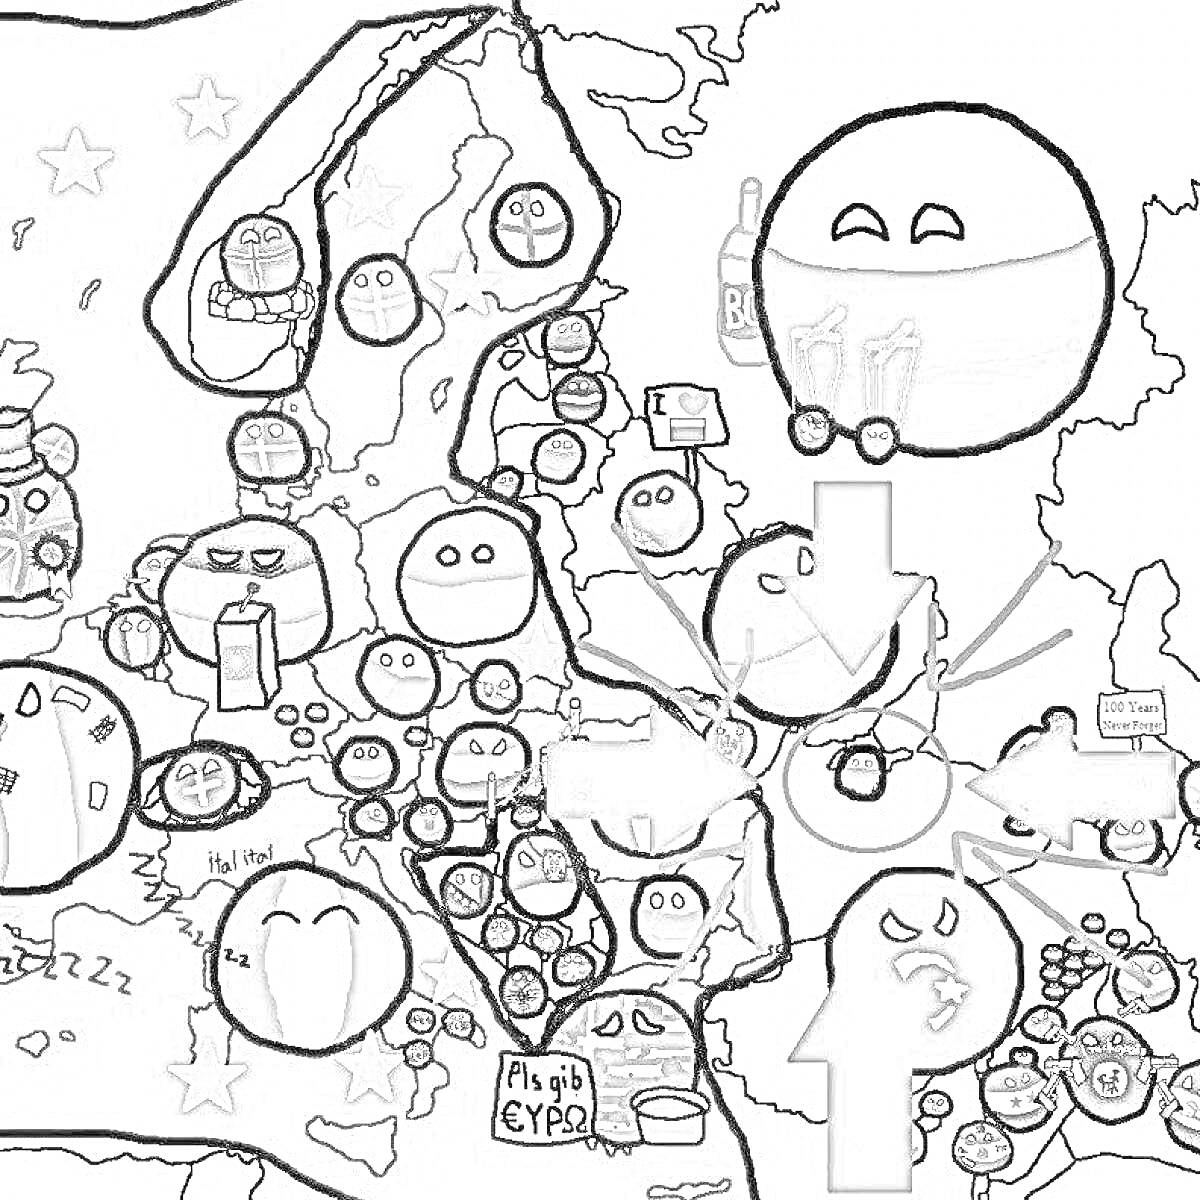 Раскраска Карта с countryballs на фоне политической карты Европы с изображением различных стран в виде шариков с лицами и национальными особенностями. Некоторые держат призы, бутылки, рисунки, сигареты и другие предметы.